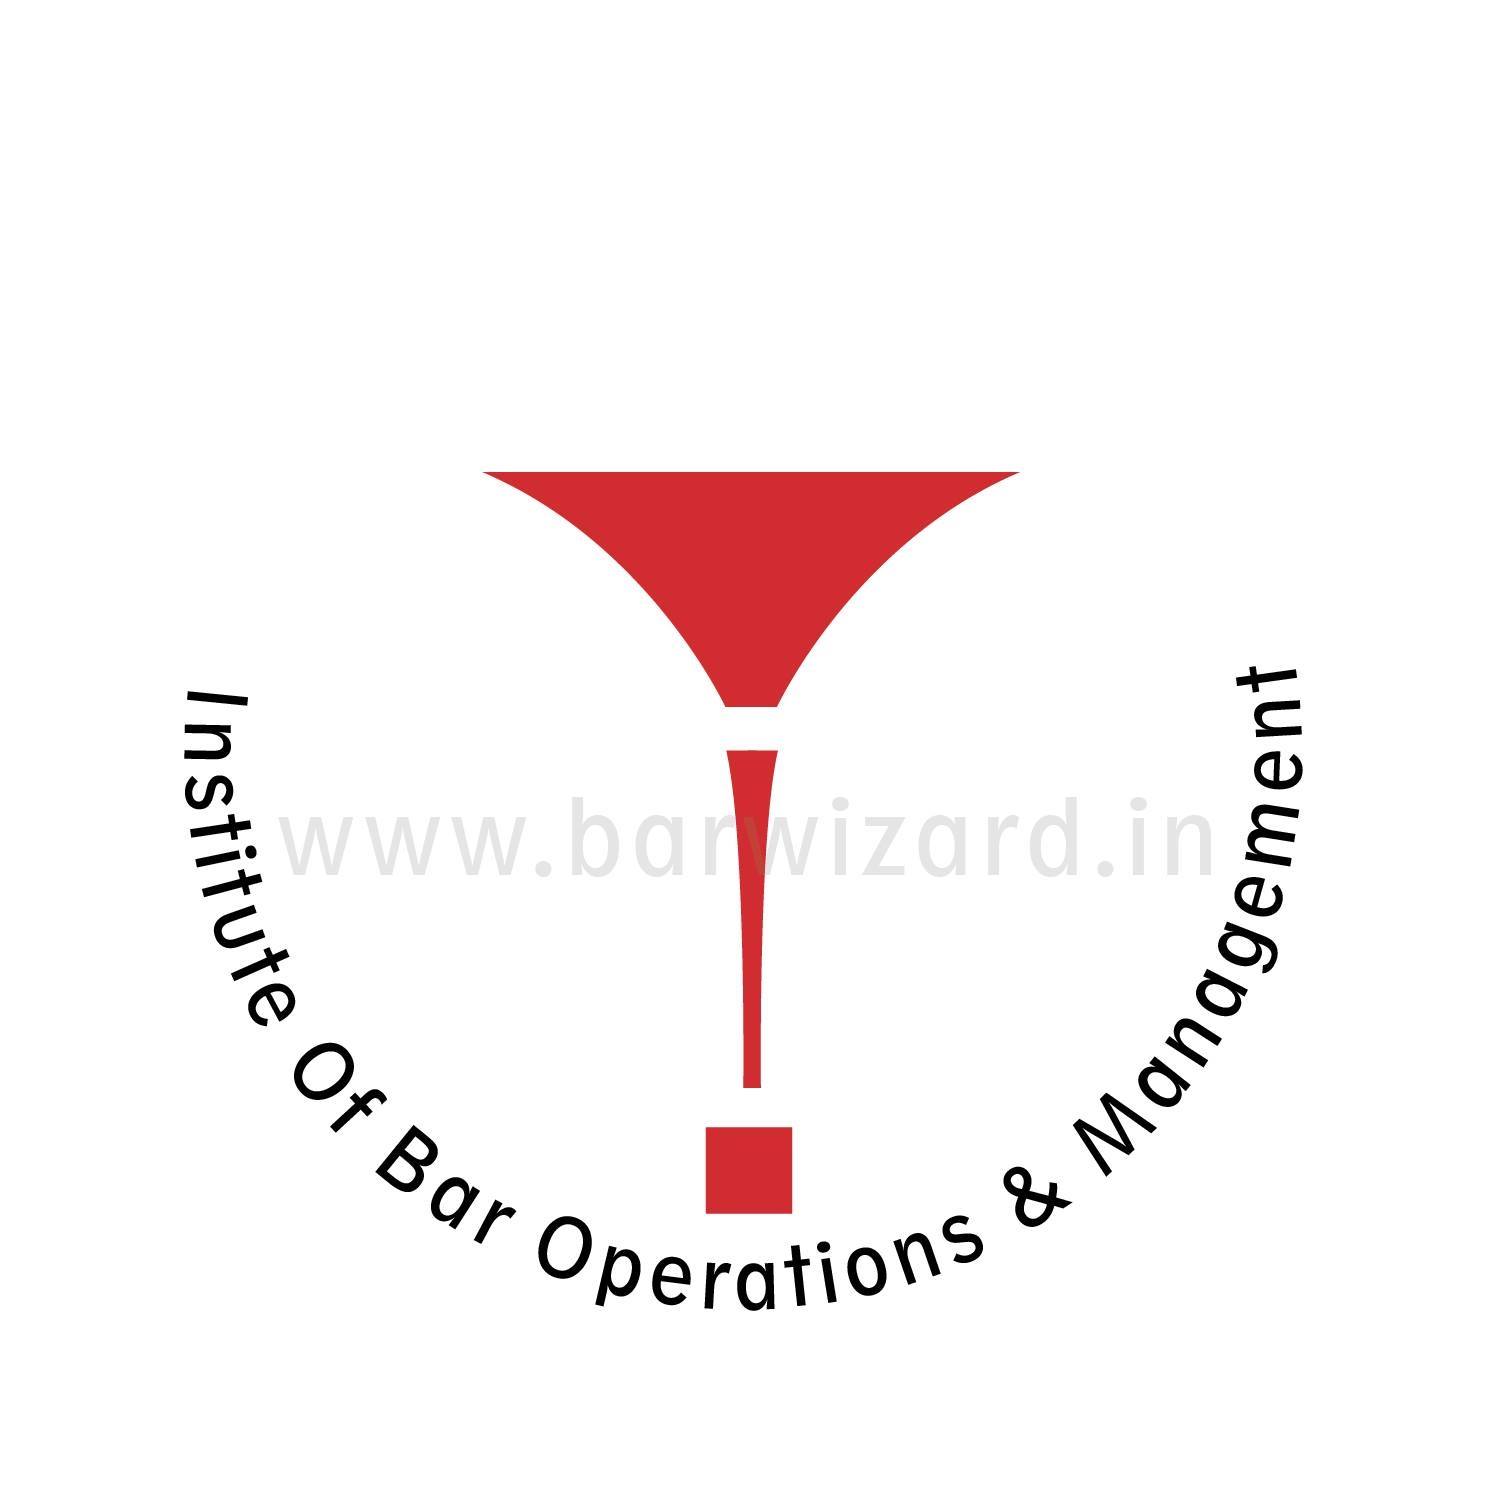 Barwizard Bartending Course | Become a Certified Bartender